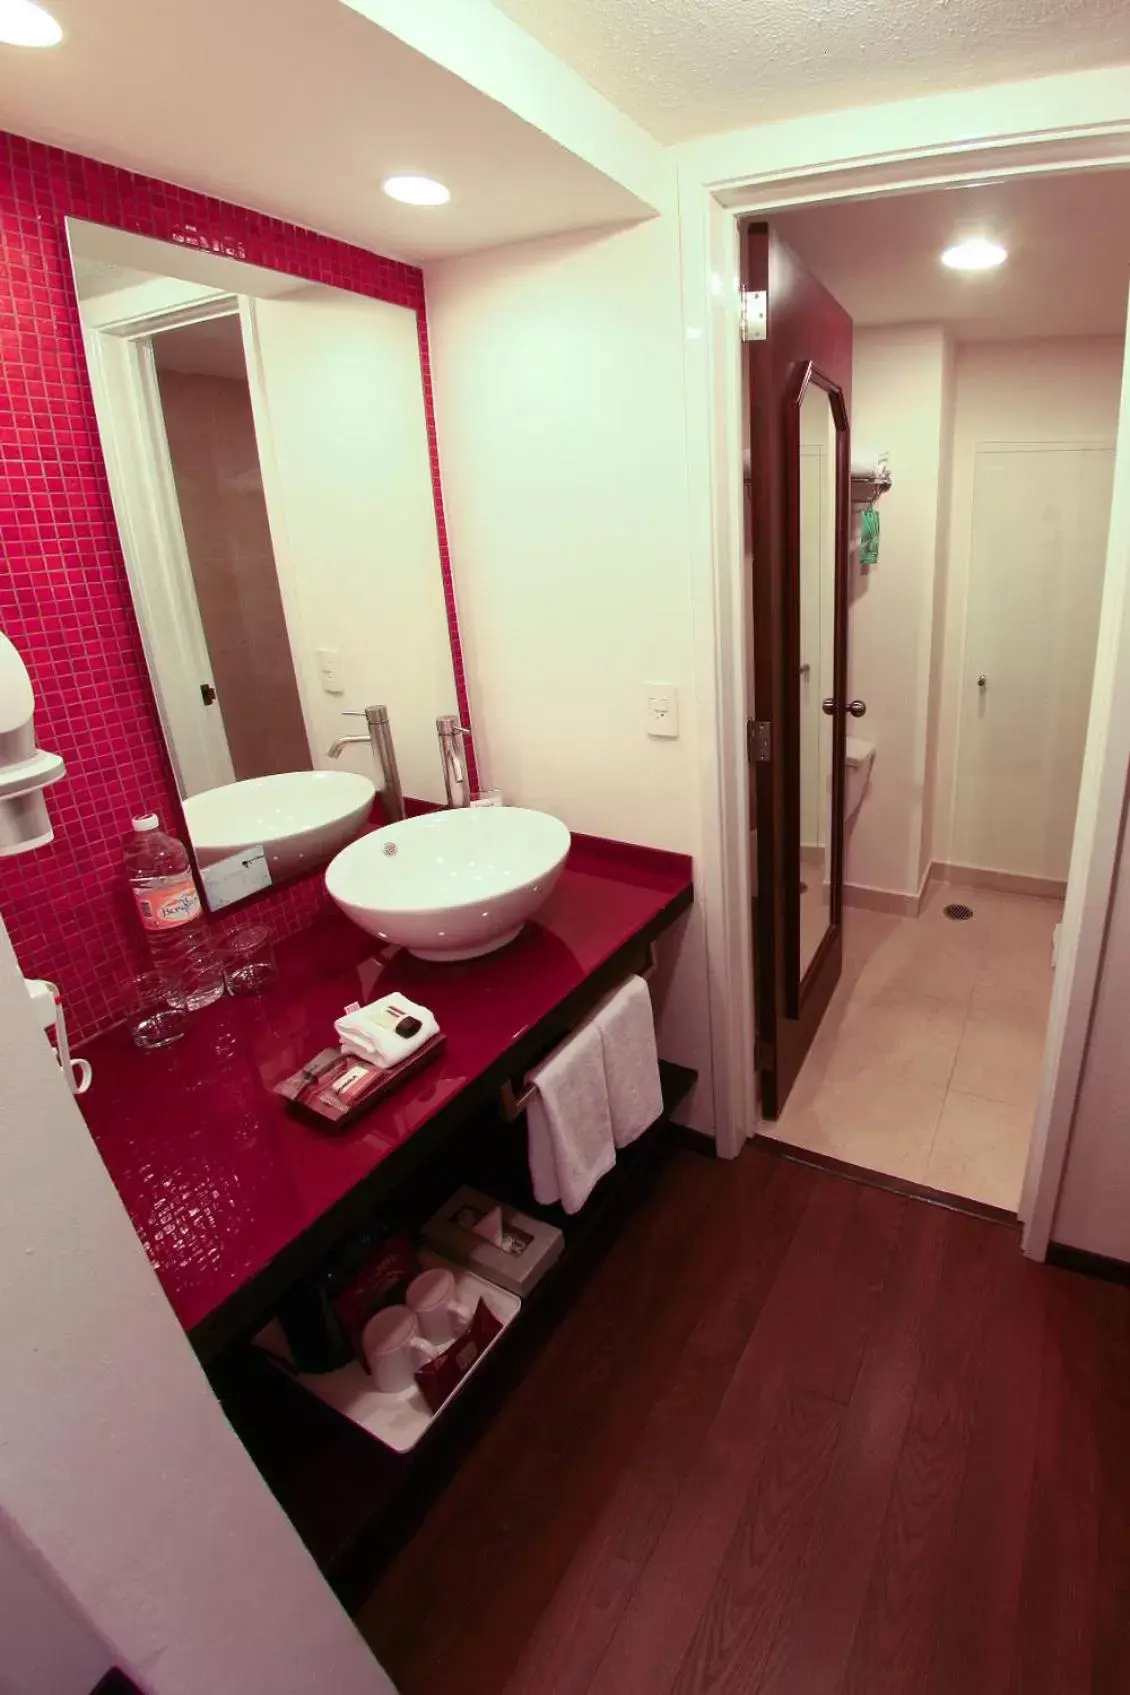 Photo of the whole room, Bathroom in Fiesta Inn Xalapa